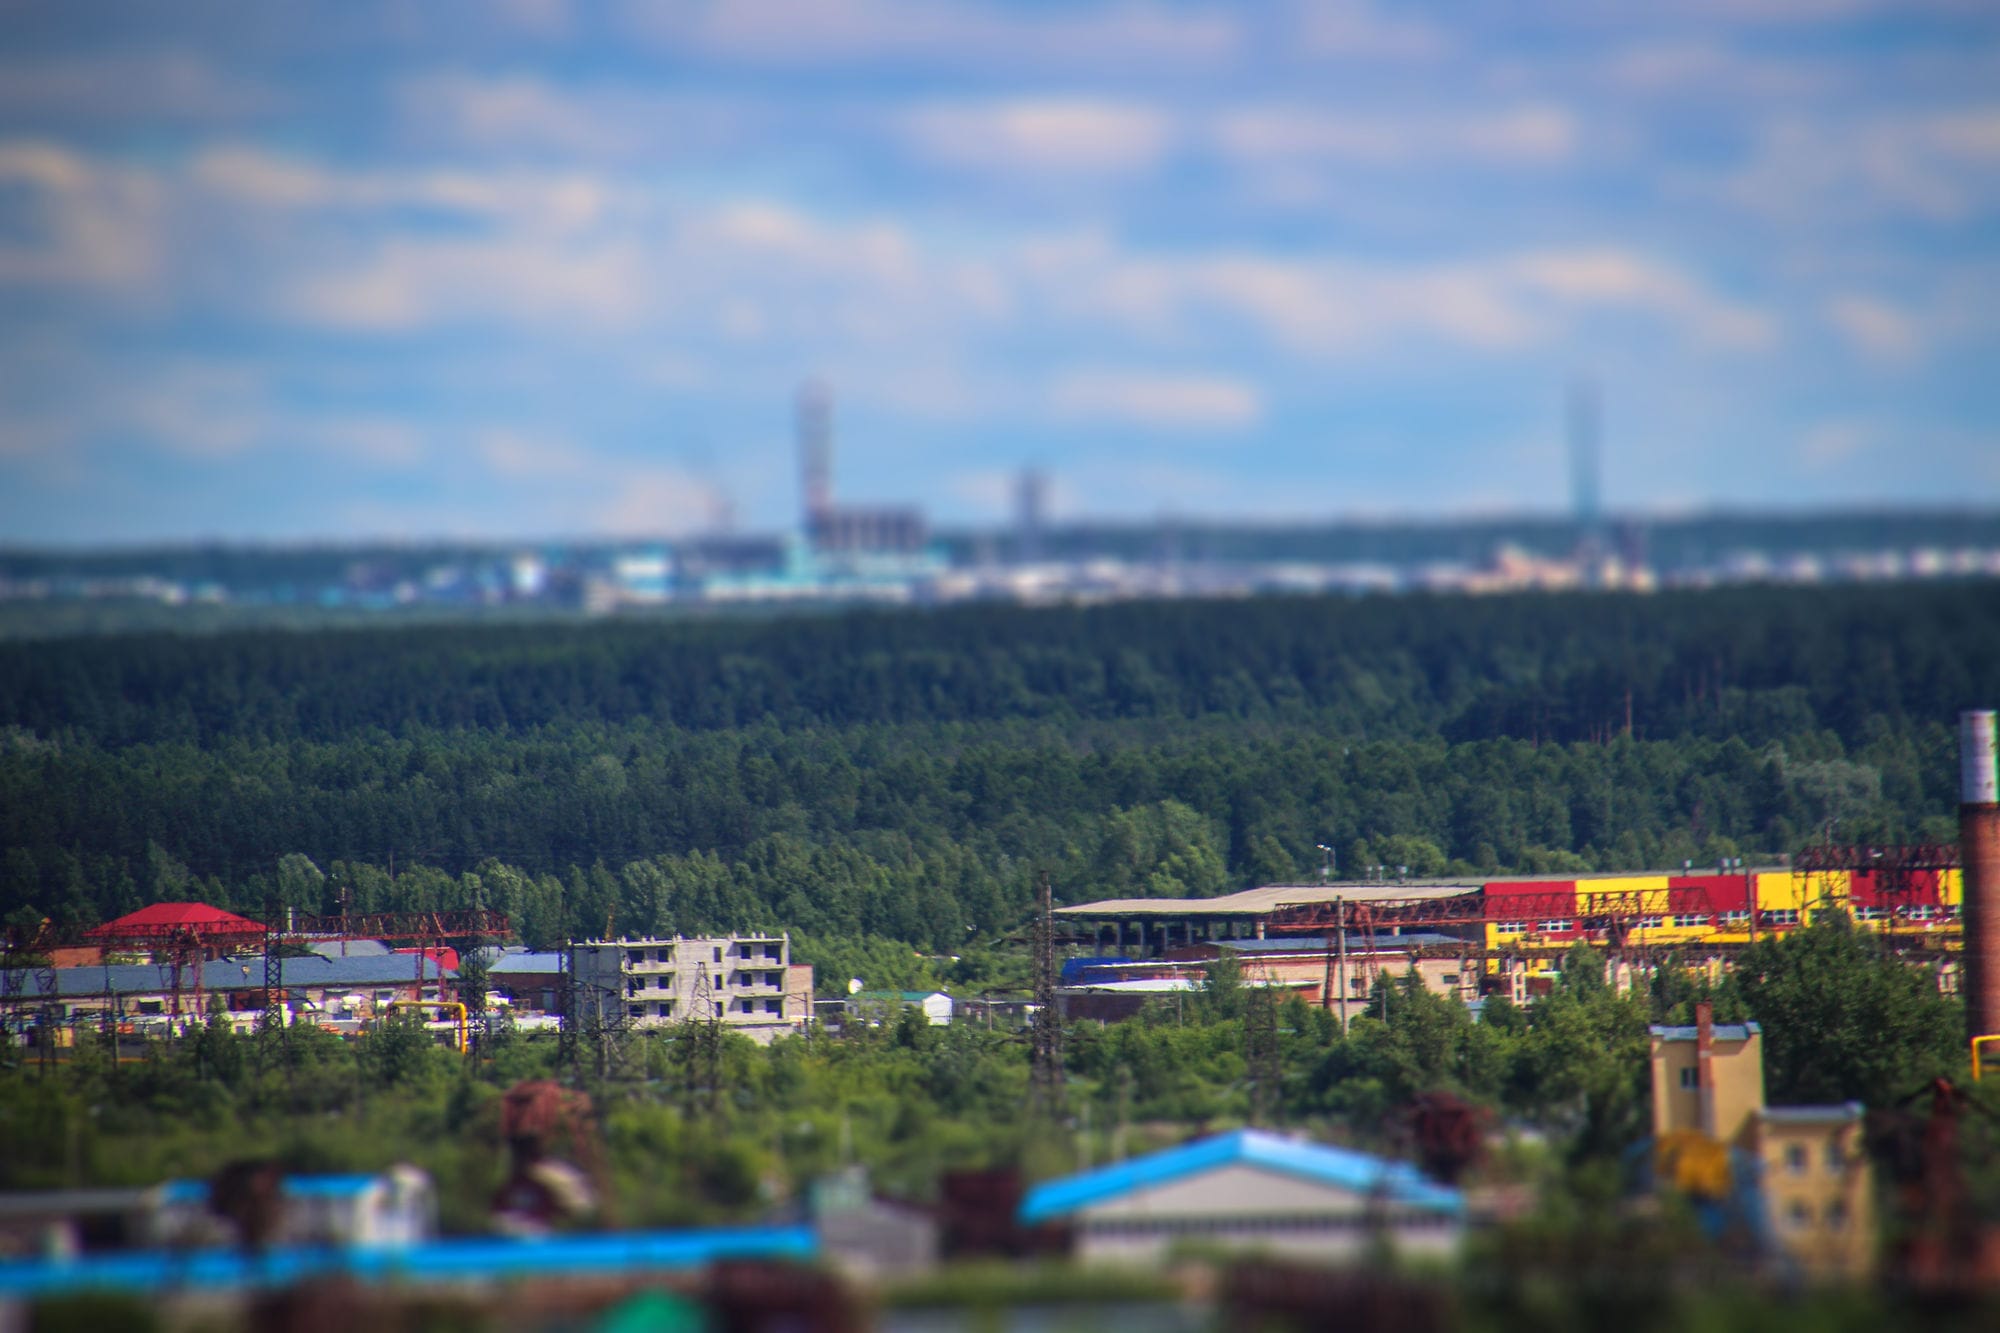 Томские новости, новая школа радонежский томск Школа в новом жилом районе Томска получила образовательную лицензию